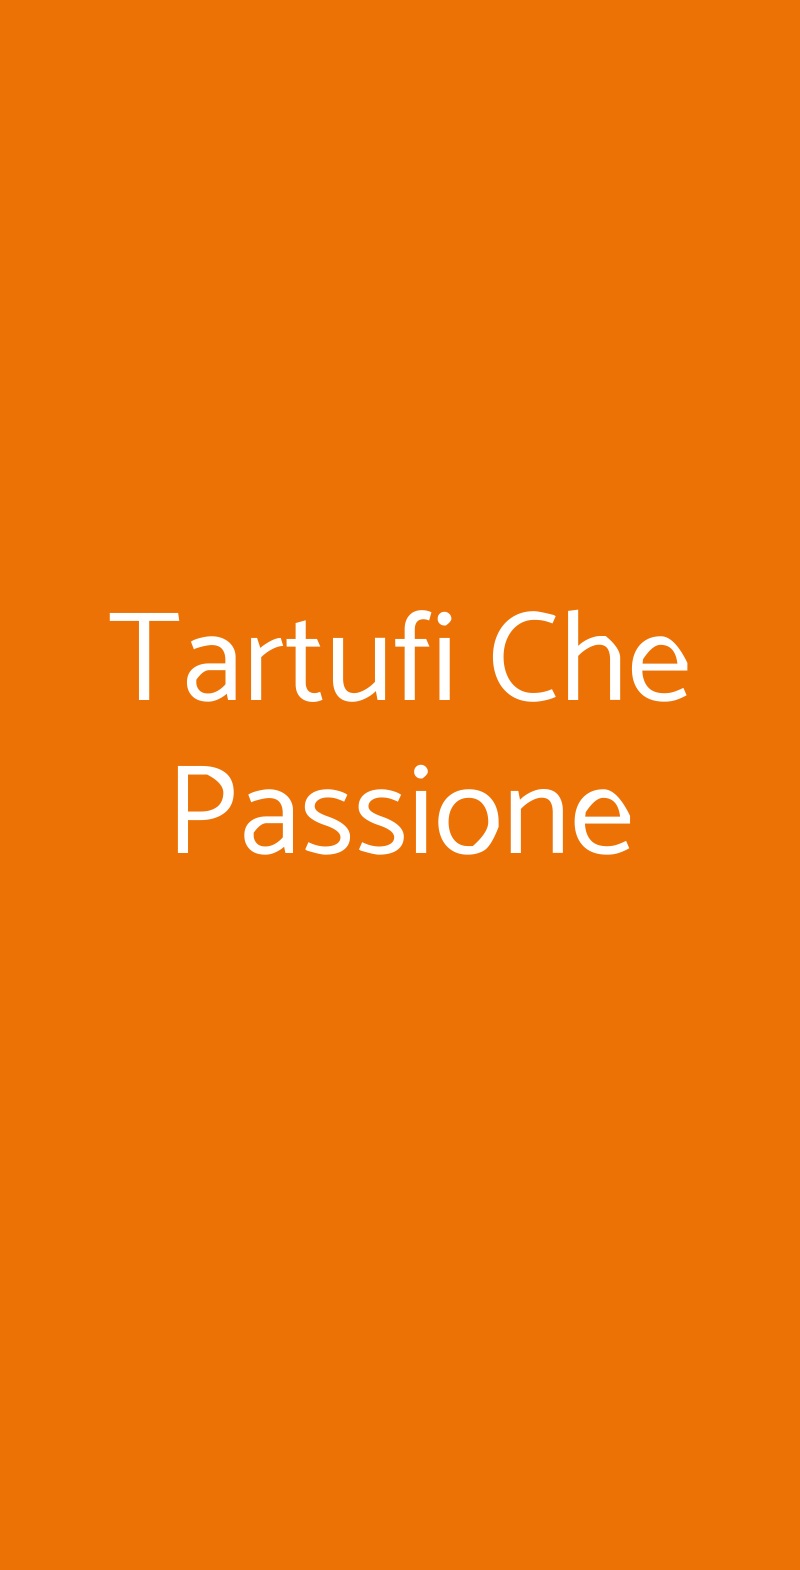 Tartufi Che Passione Napoli menù 1 pagina